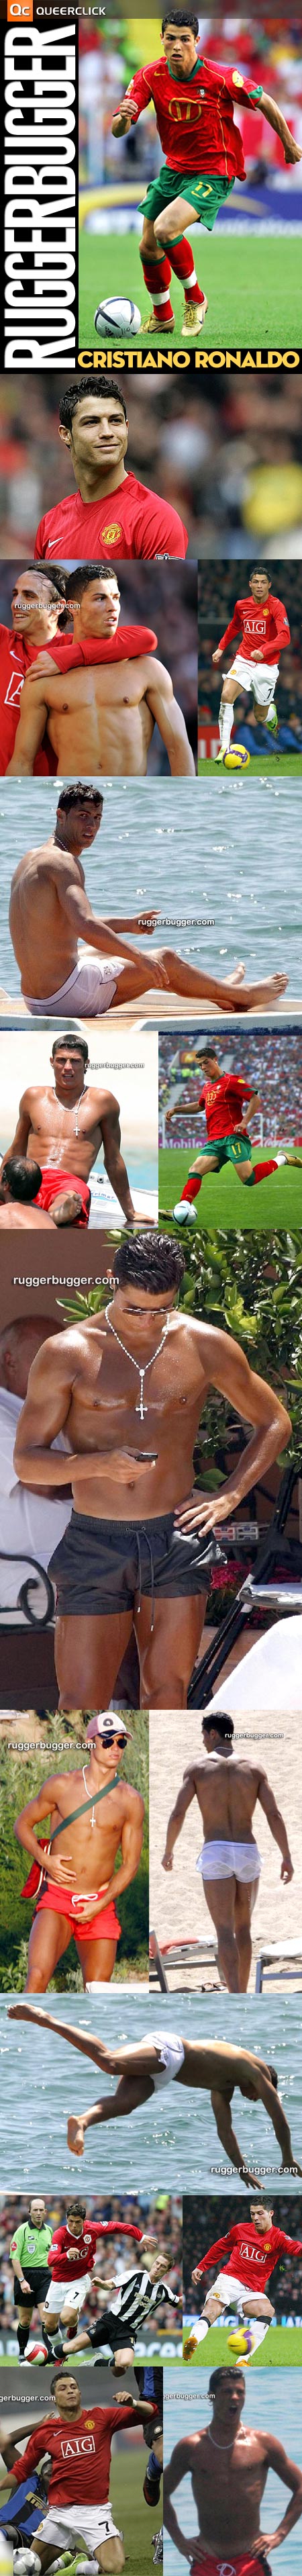 Cristiano Ronaldo at Ruggerbugger